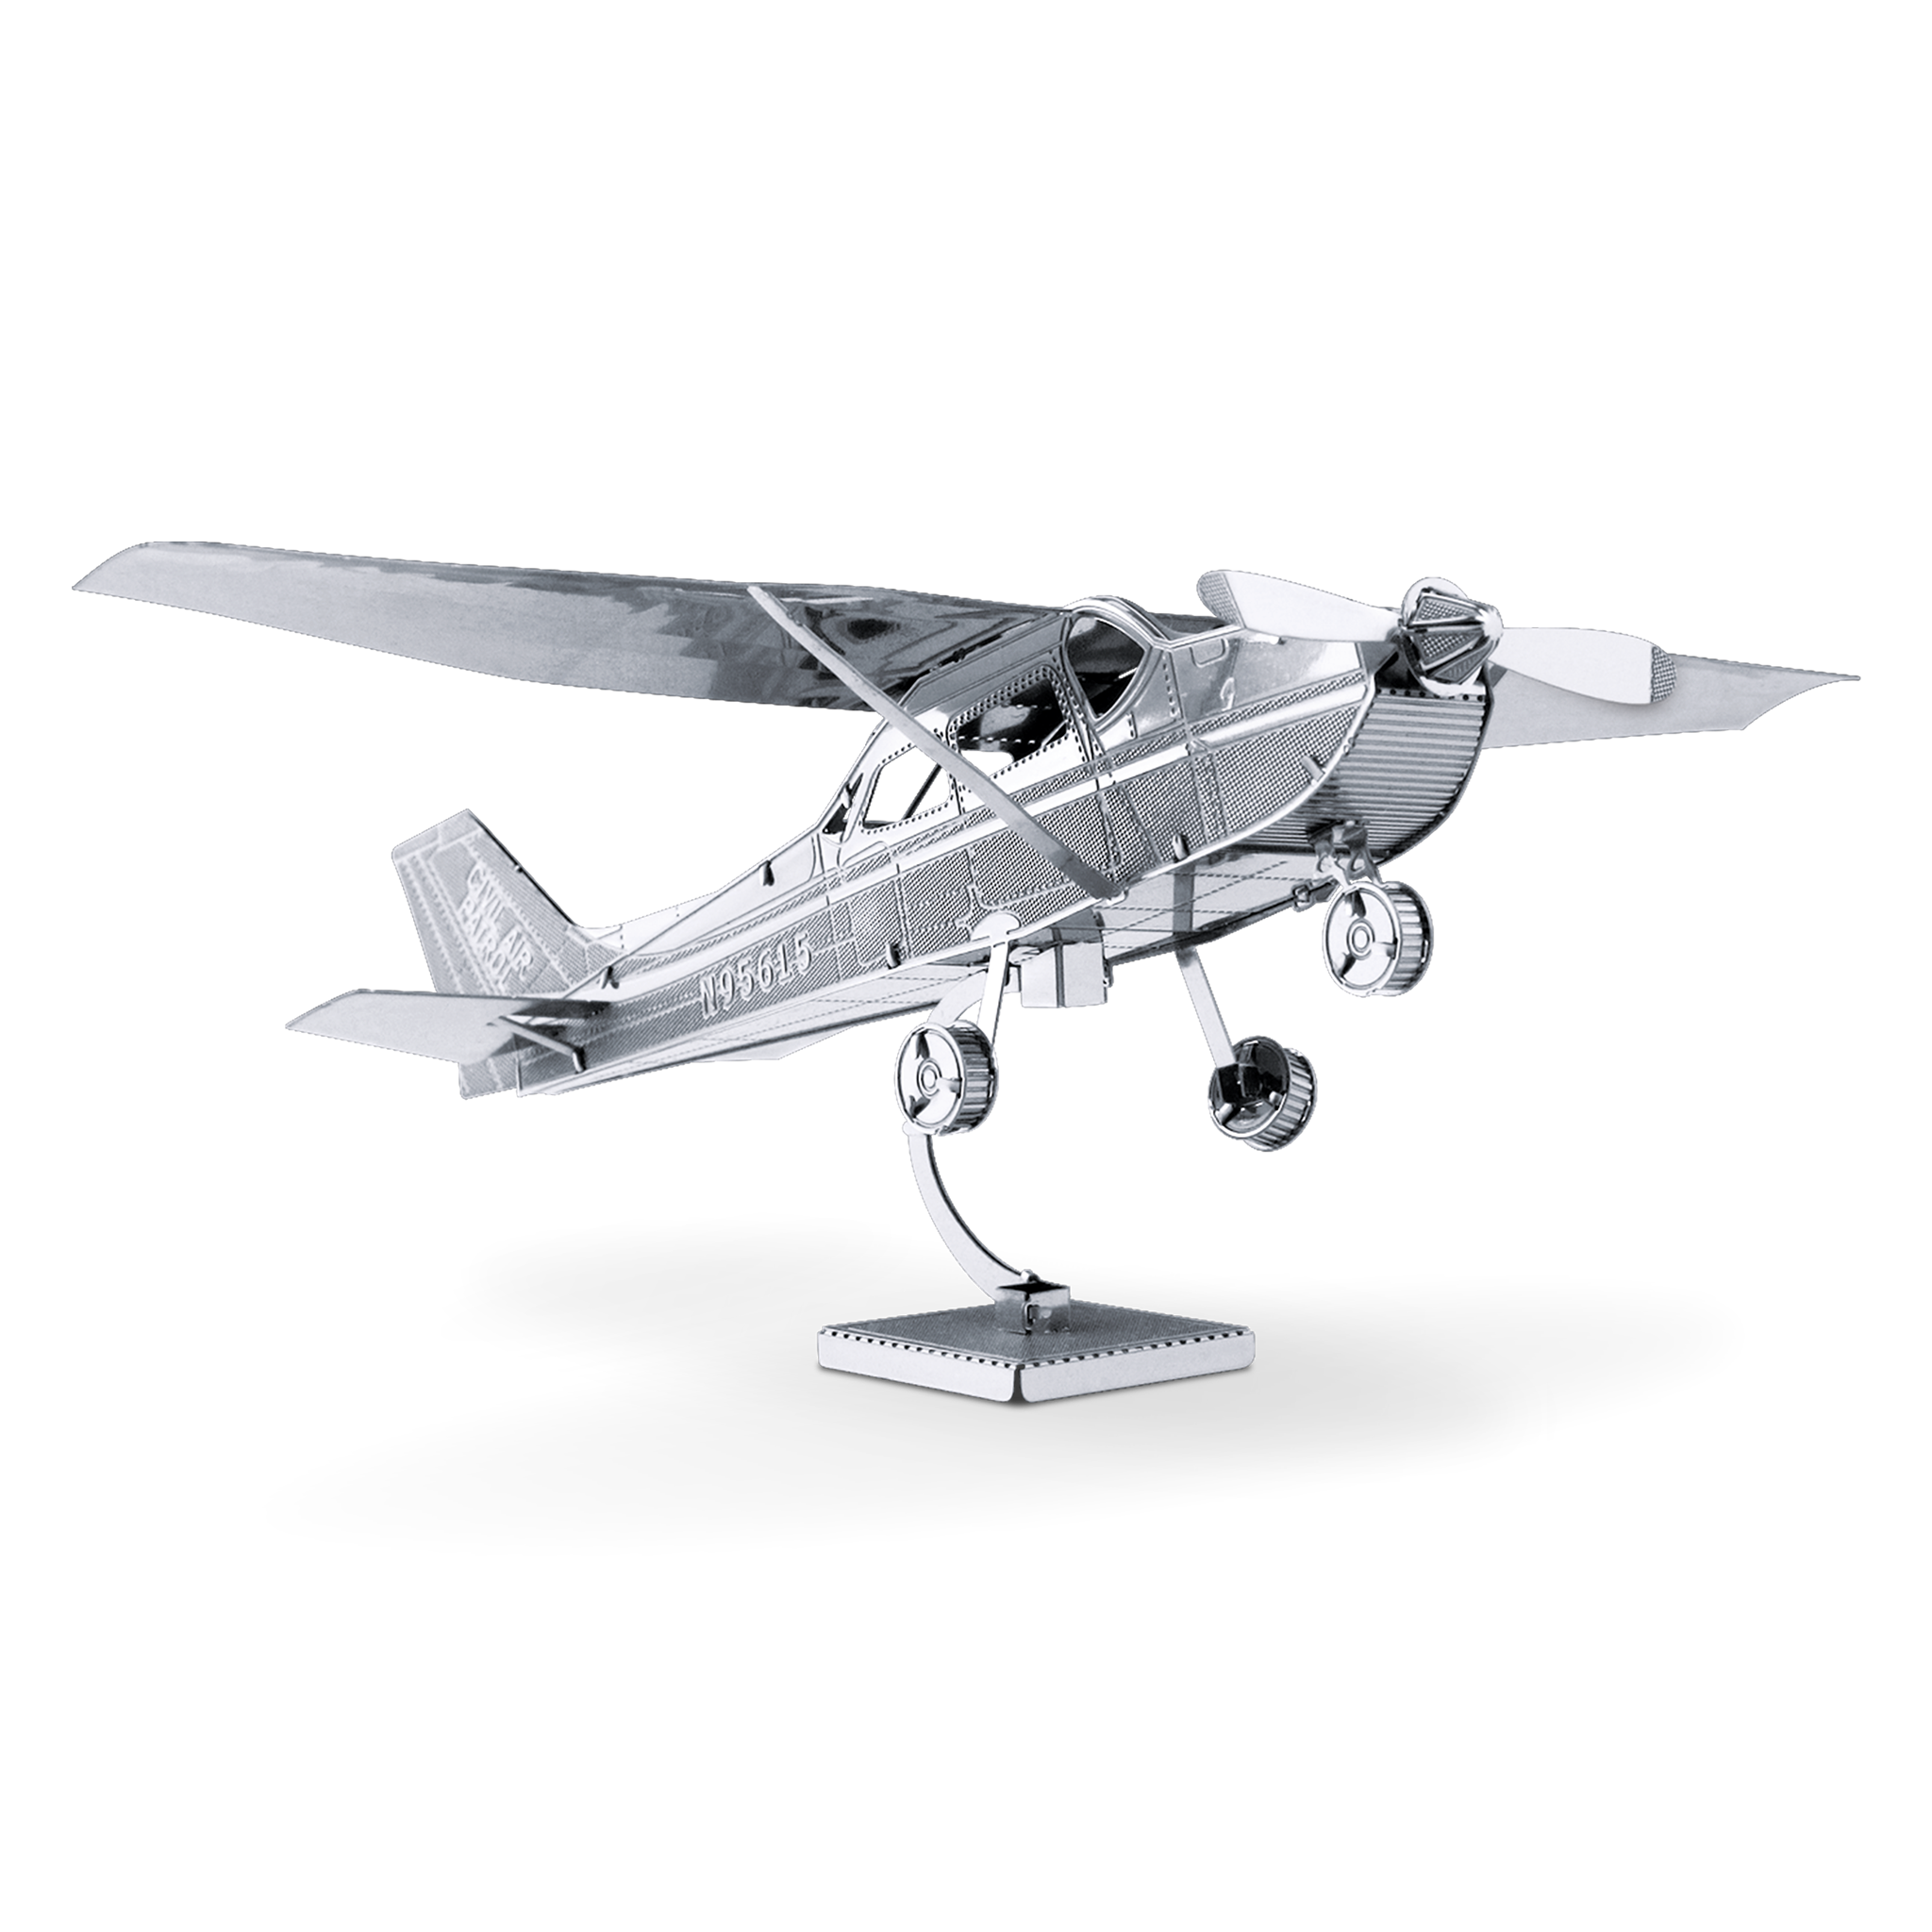 Цесна 172s. Метолические модели самолётов. Сборные металлические модели самолетов. Металлический 3д пазл самолет. Металлическая модель самолета